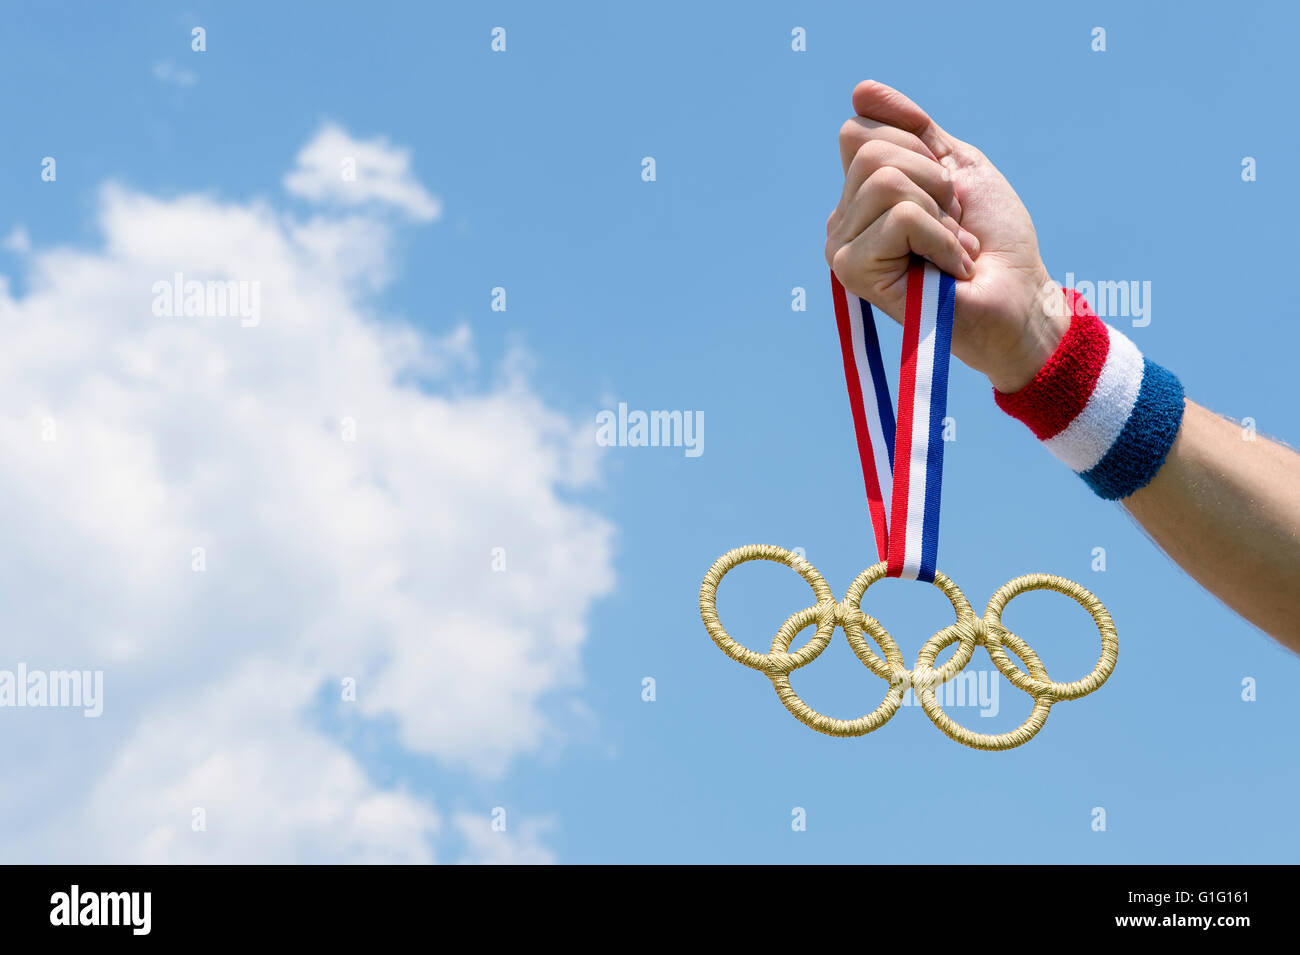 RIO DE JANEIRO.- El 4 de febrero de 2016: Mano con rojo, blanco y azul pulsera de oro sujetando los anillos olímpicos medalla colgando de la cinta. Foto de stock